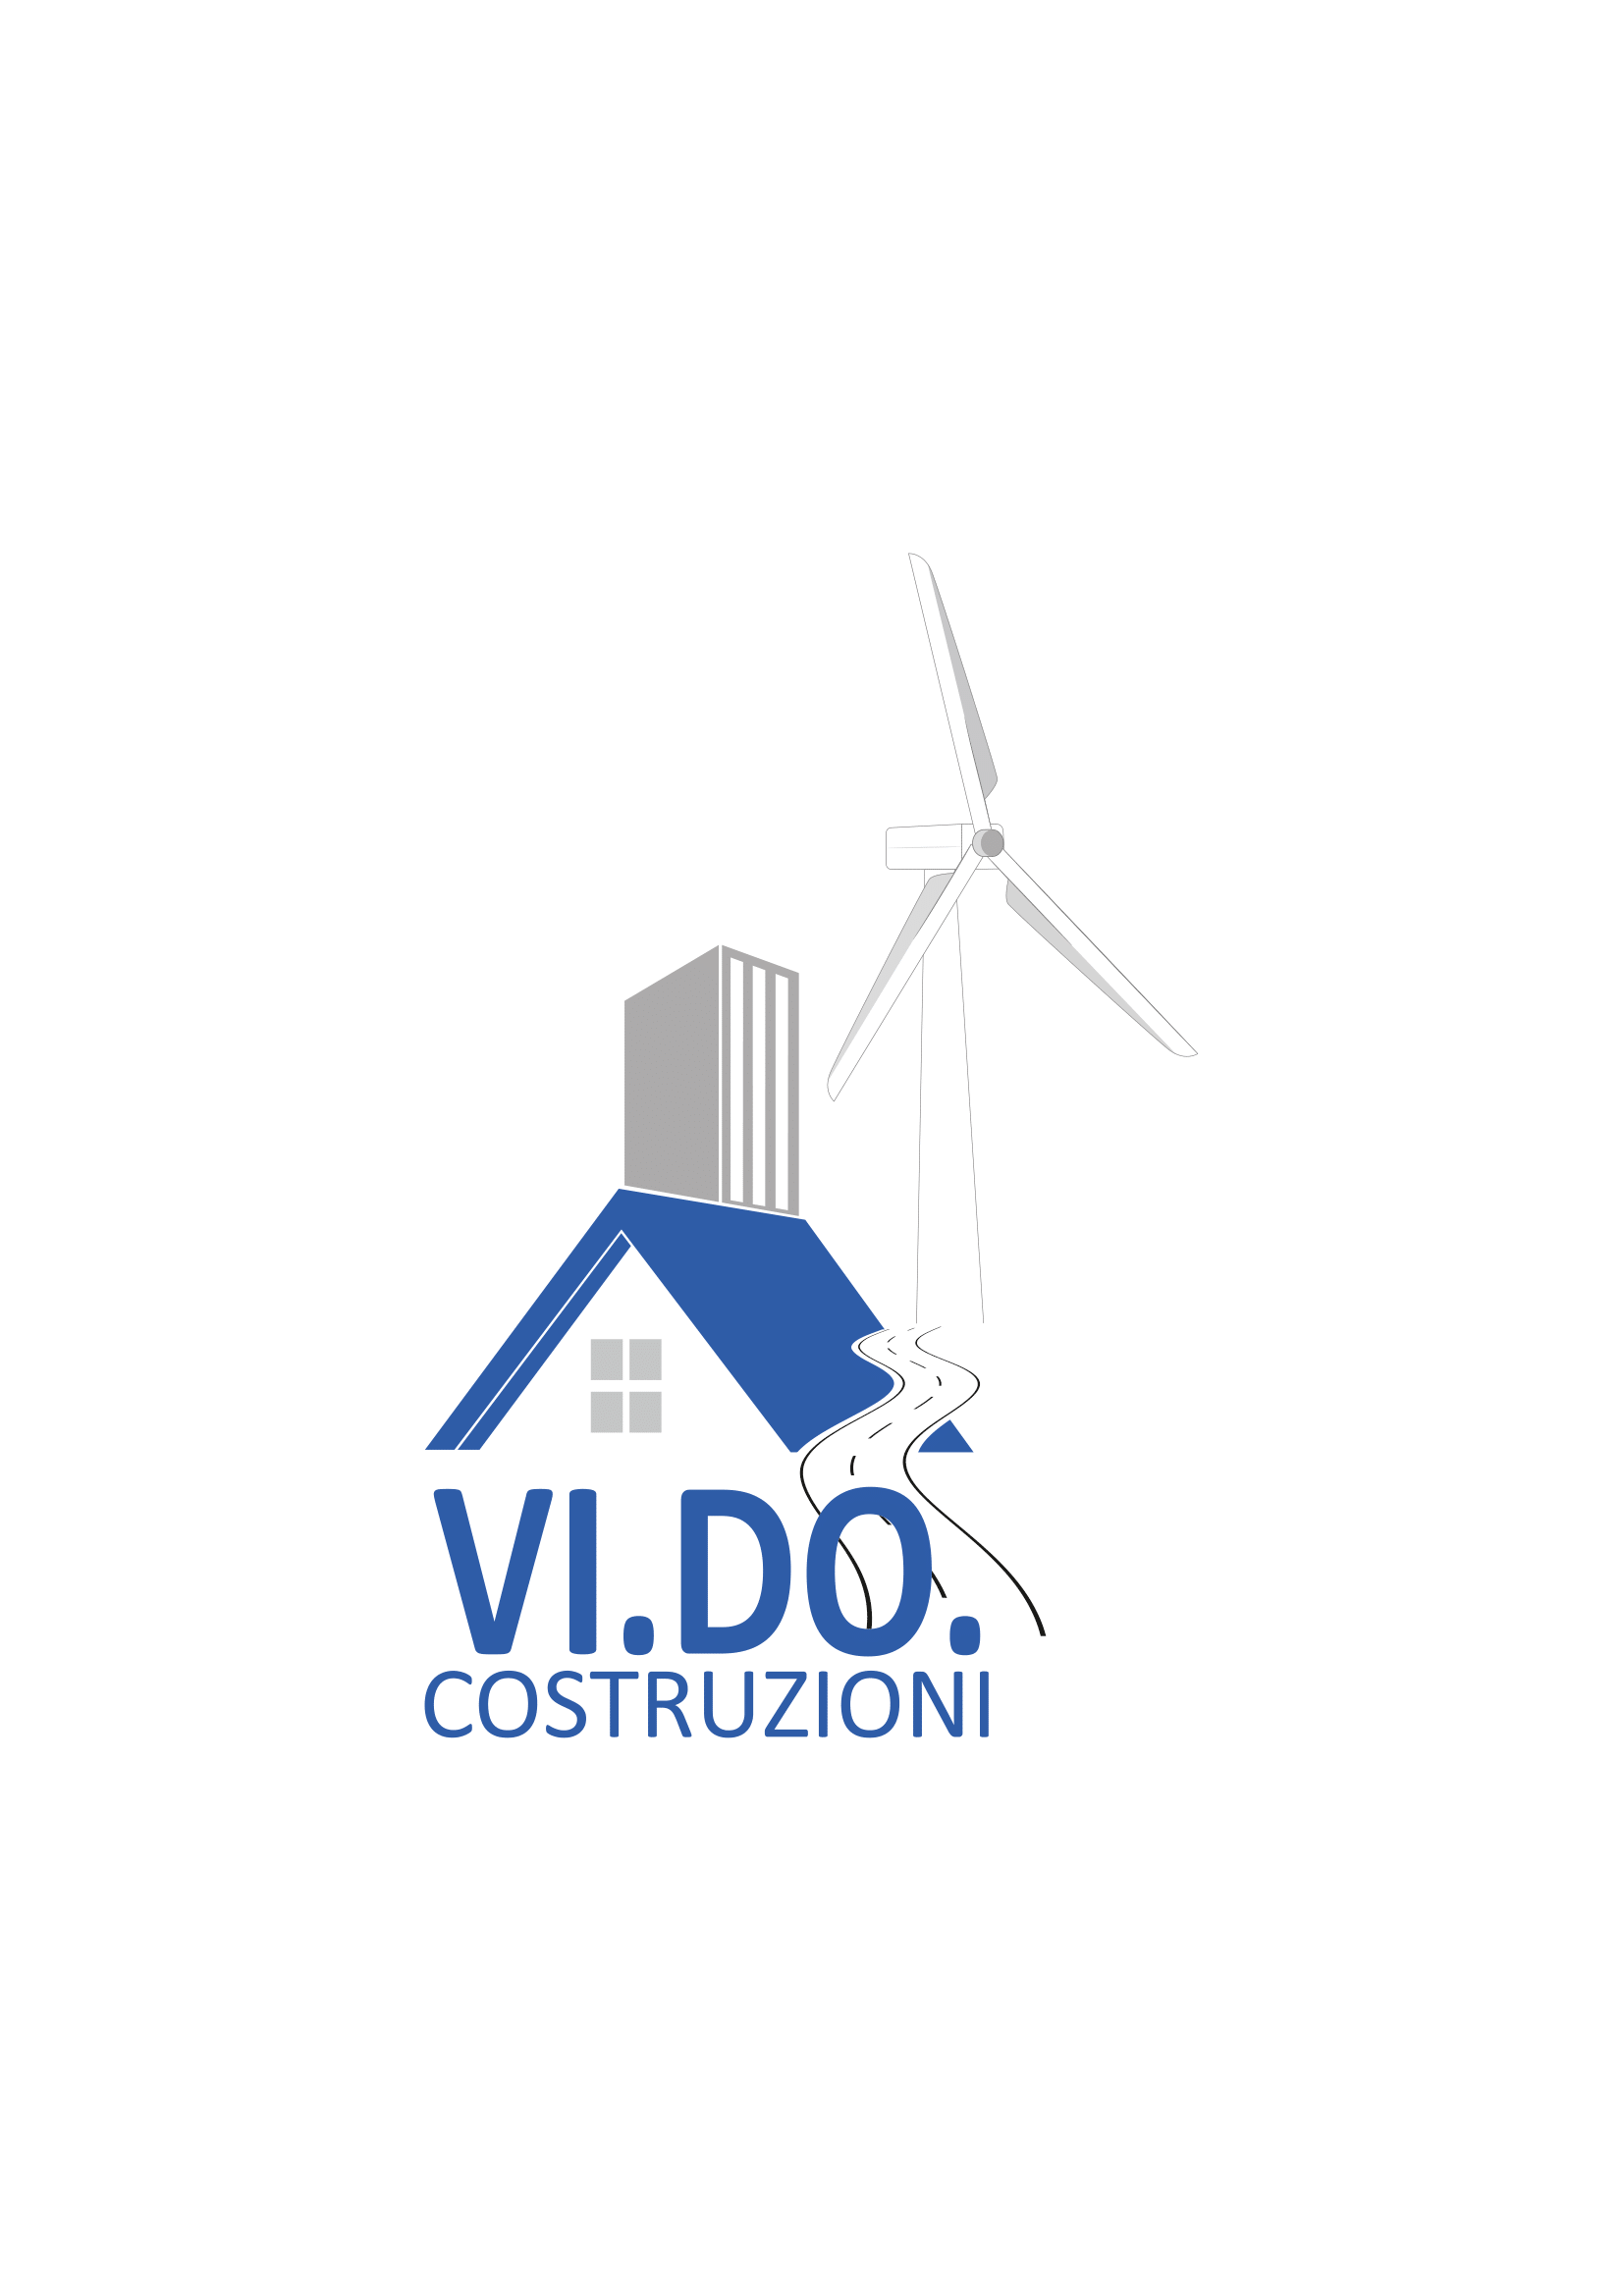 Logo Vi. Do. Costruzioni vettoriale-1